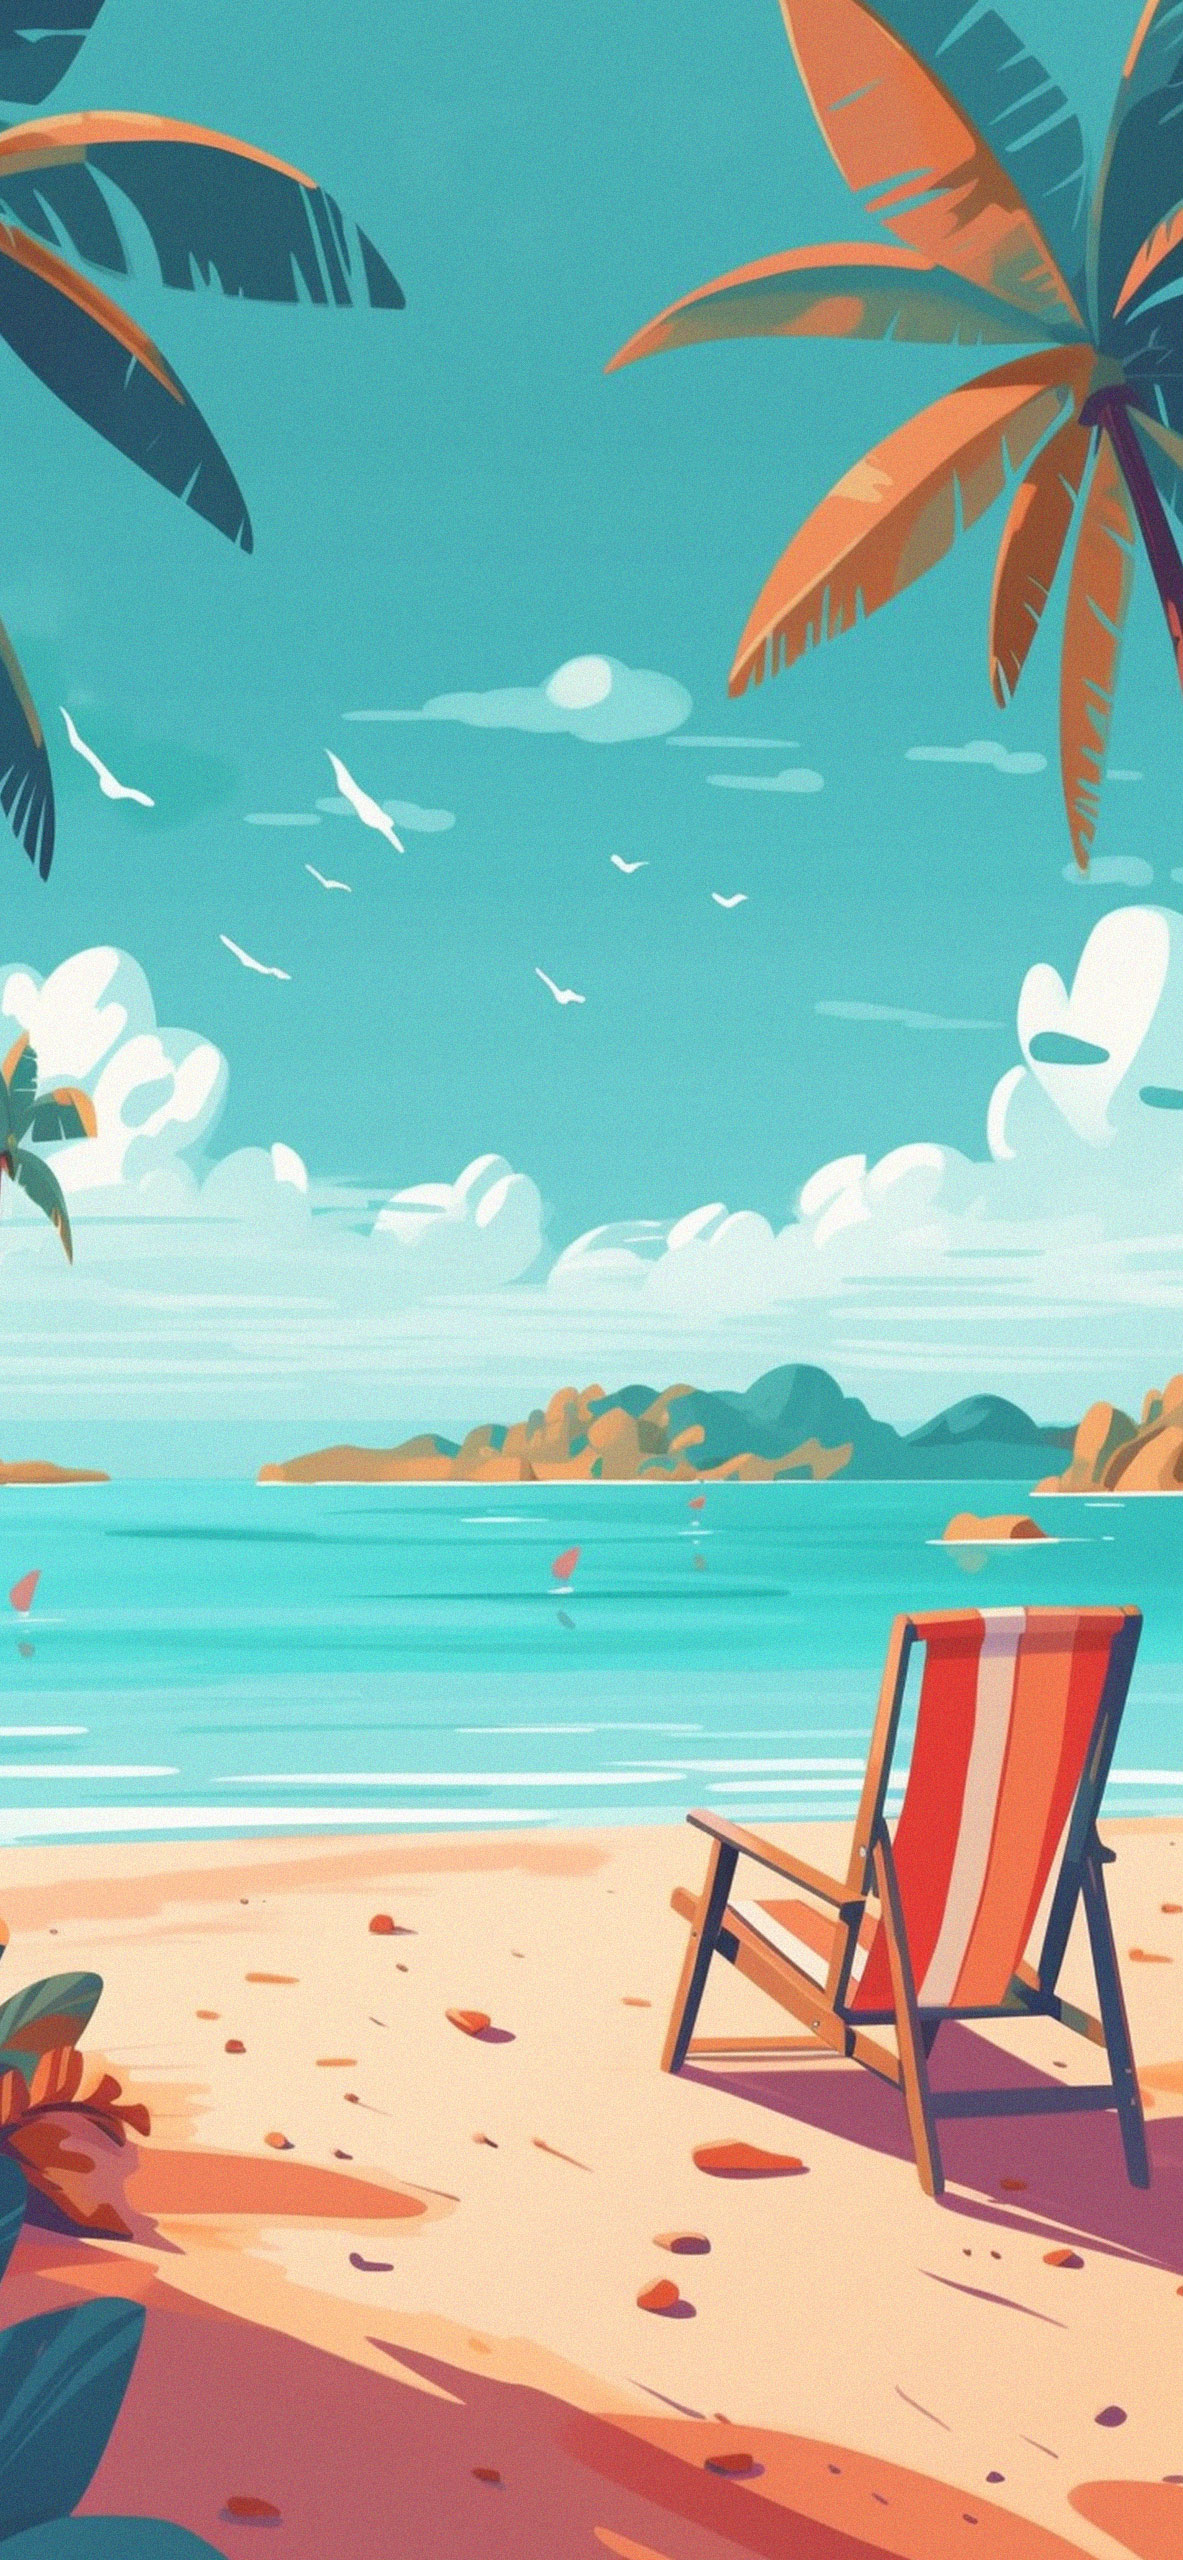 Best Summer Beach Wallpapers - Preppy Beach Wallpaper iPhone